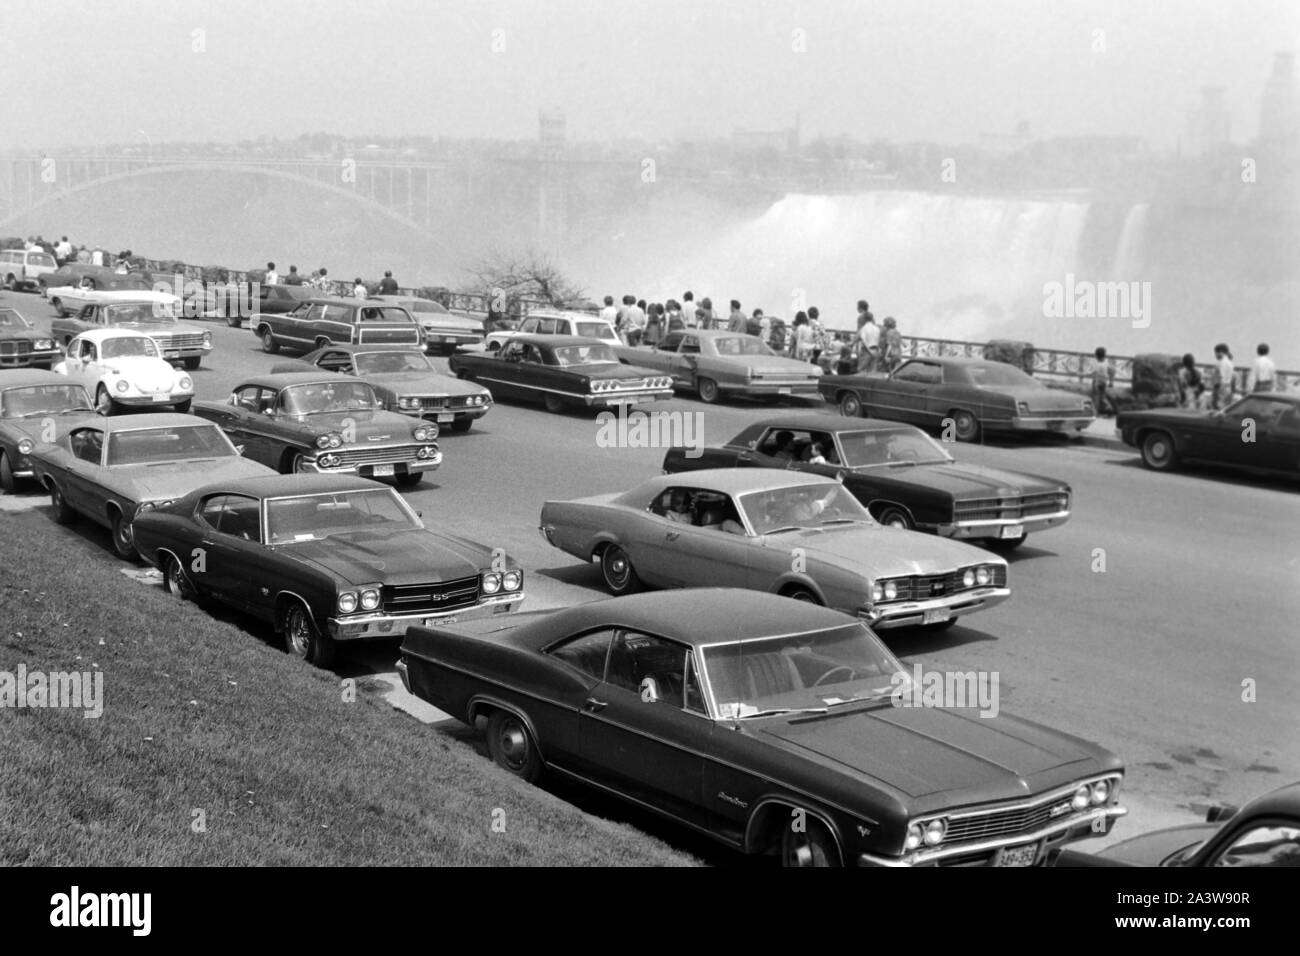 Kanadische Seite der Niagarafälle mit Blick auf die amerikanischen Fälle, um 1967. Canadian Side to the Niagara Falls with view on the American Falls, around 1967. Stock Photo